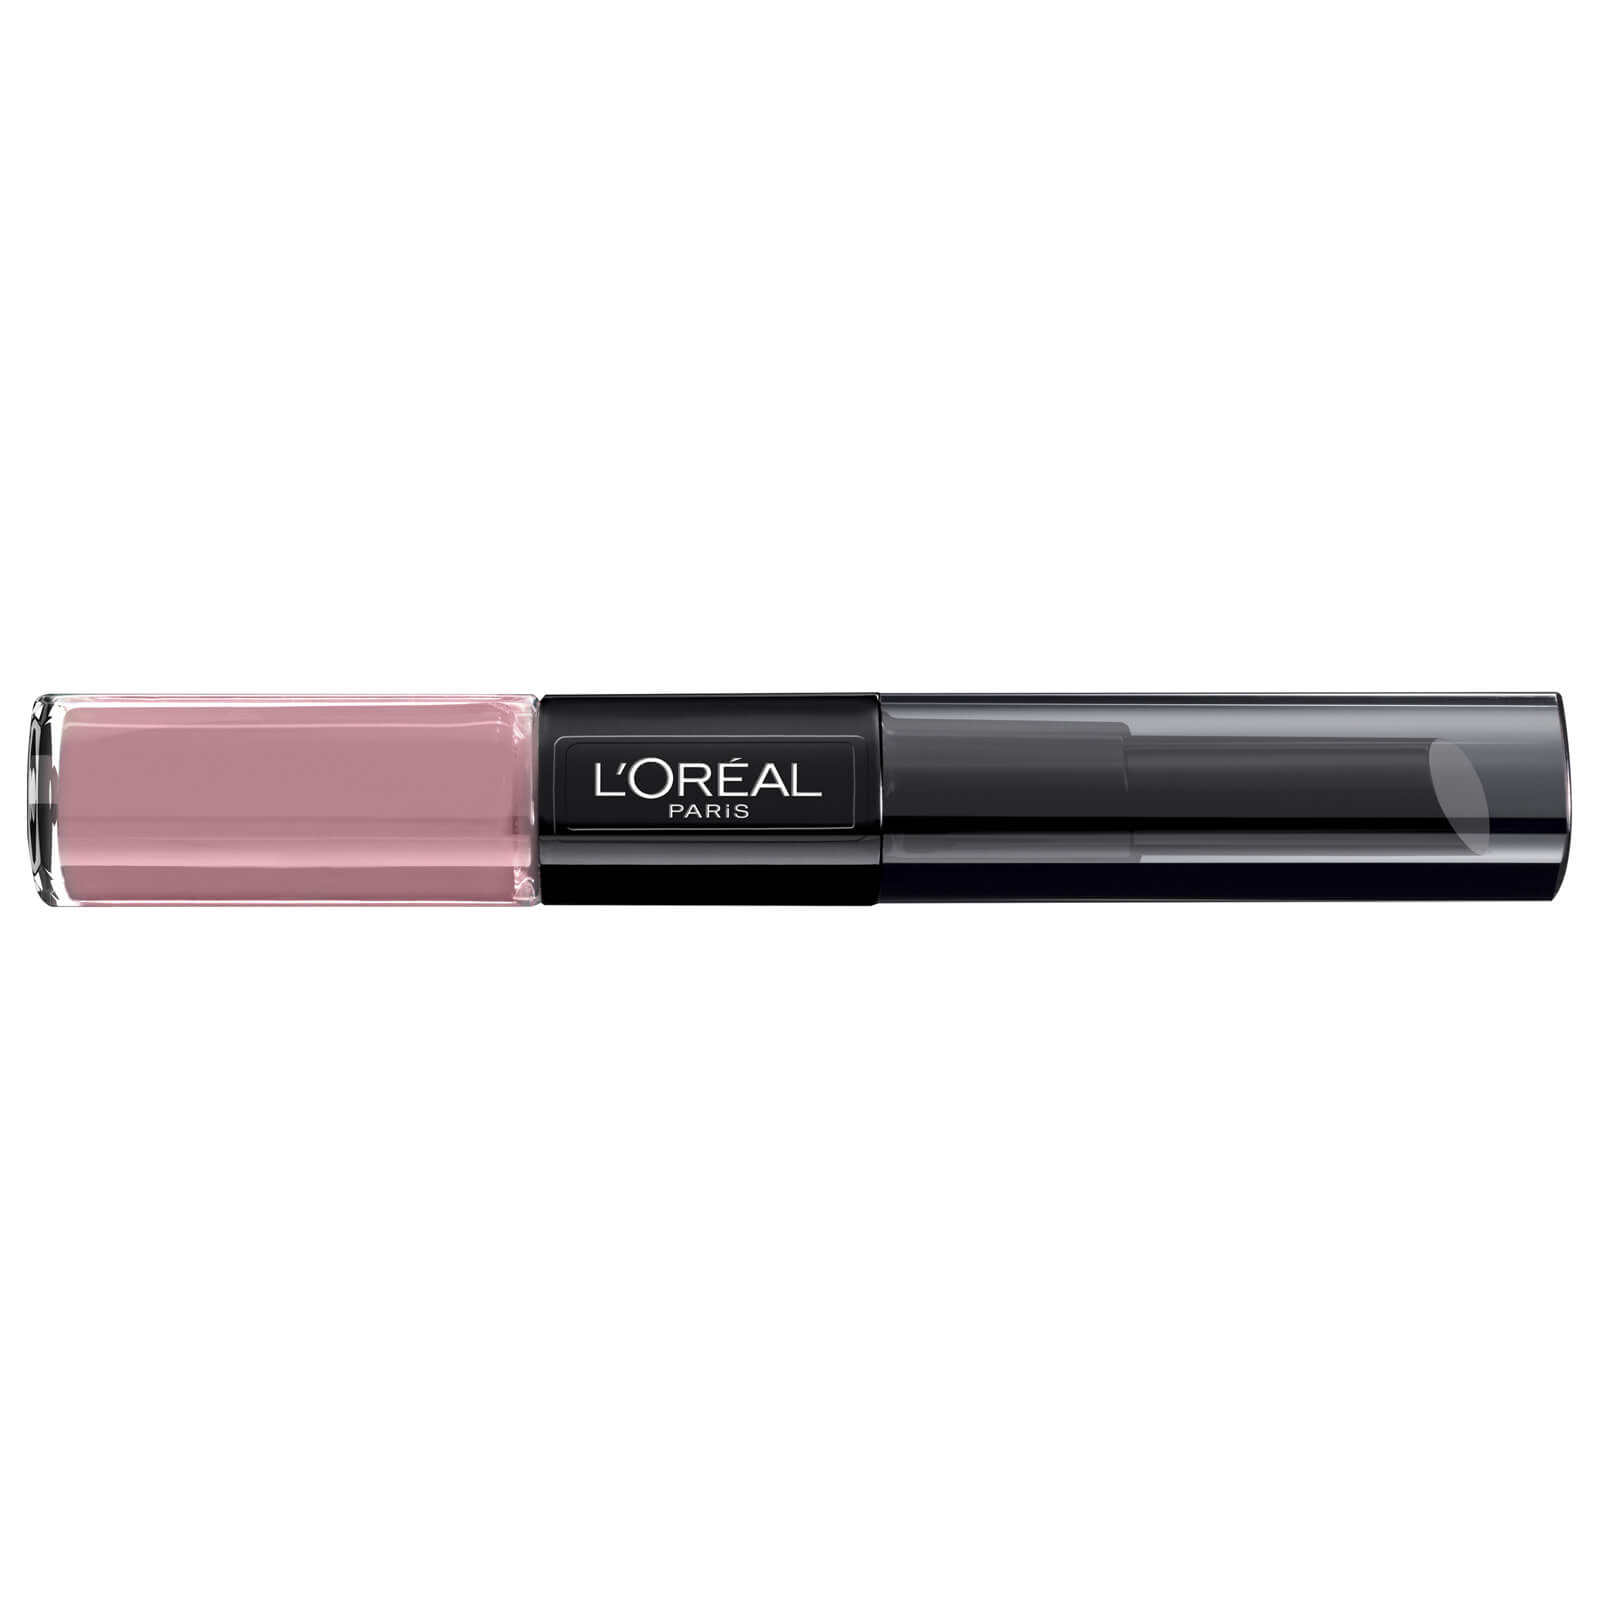 L’Oréal Paris L'Oréal Paris Infallible 2-Step Lip Colour (Various Shades) - 111 Permanent Blush